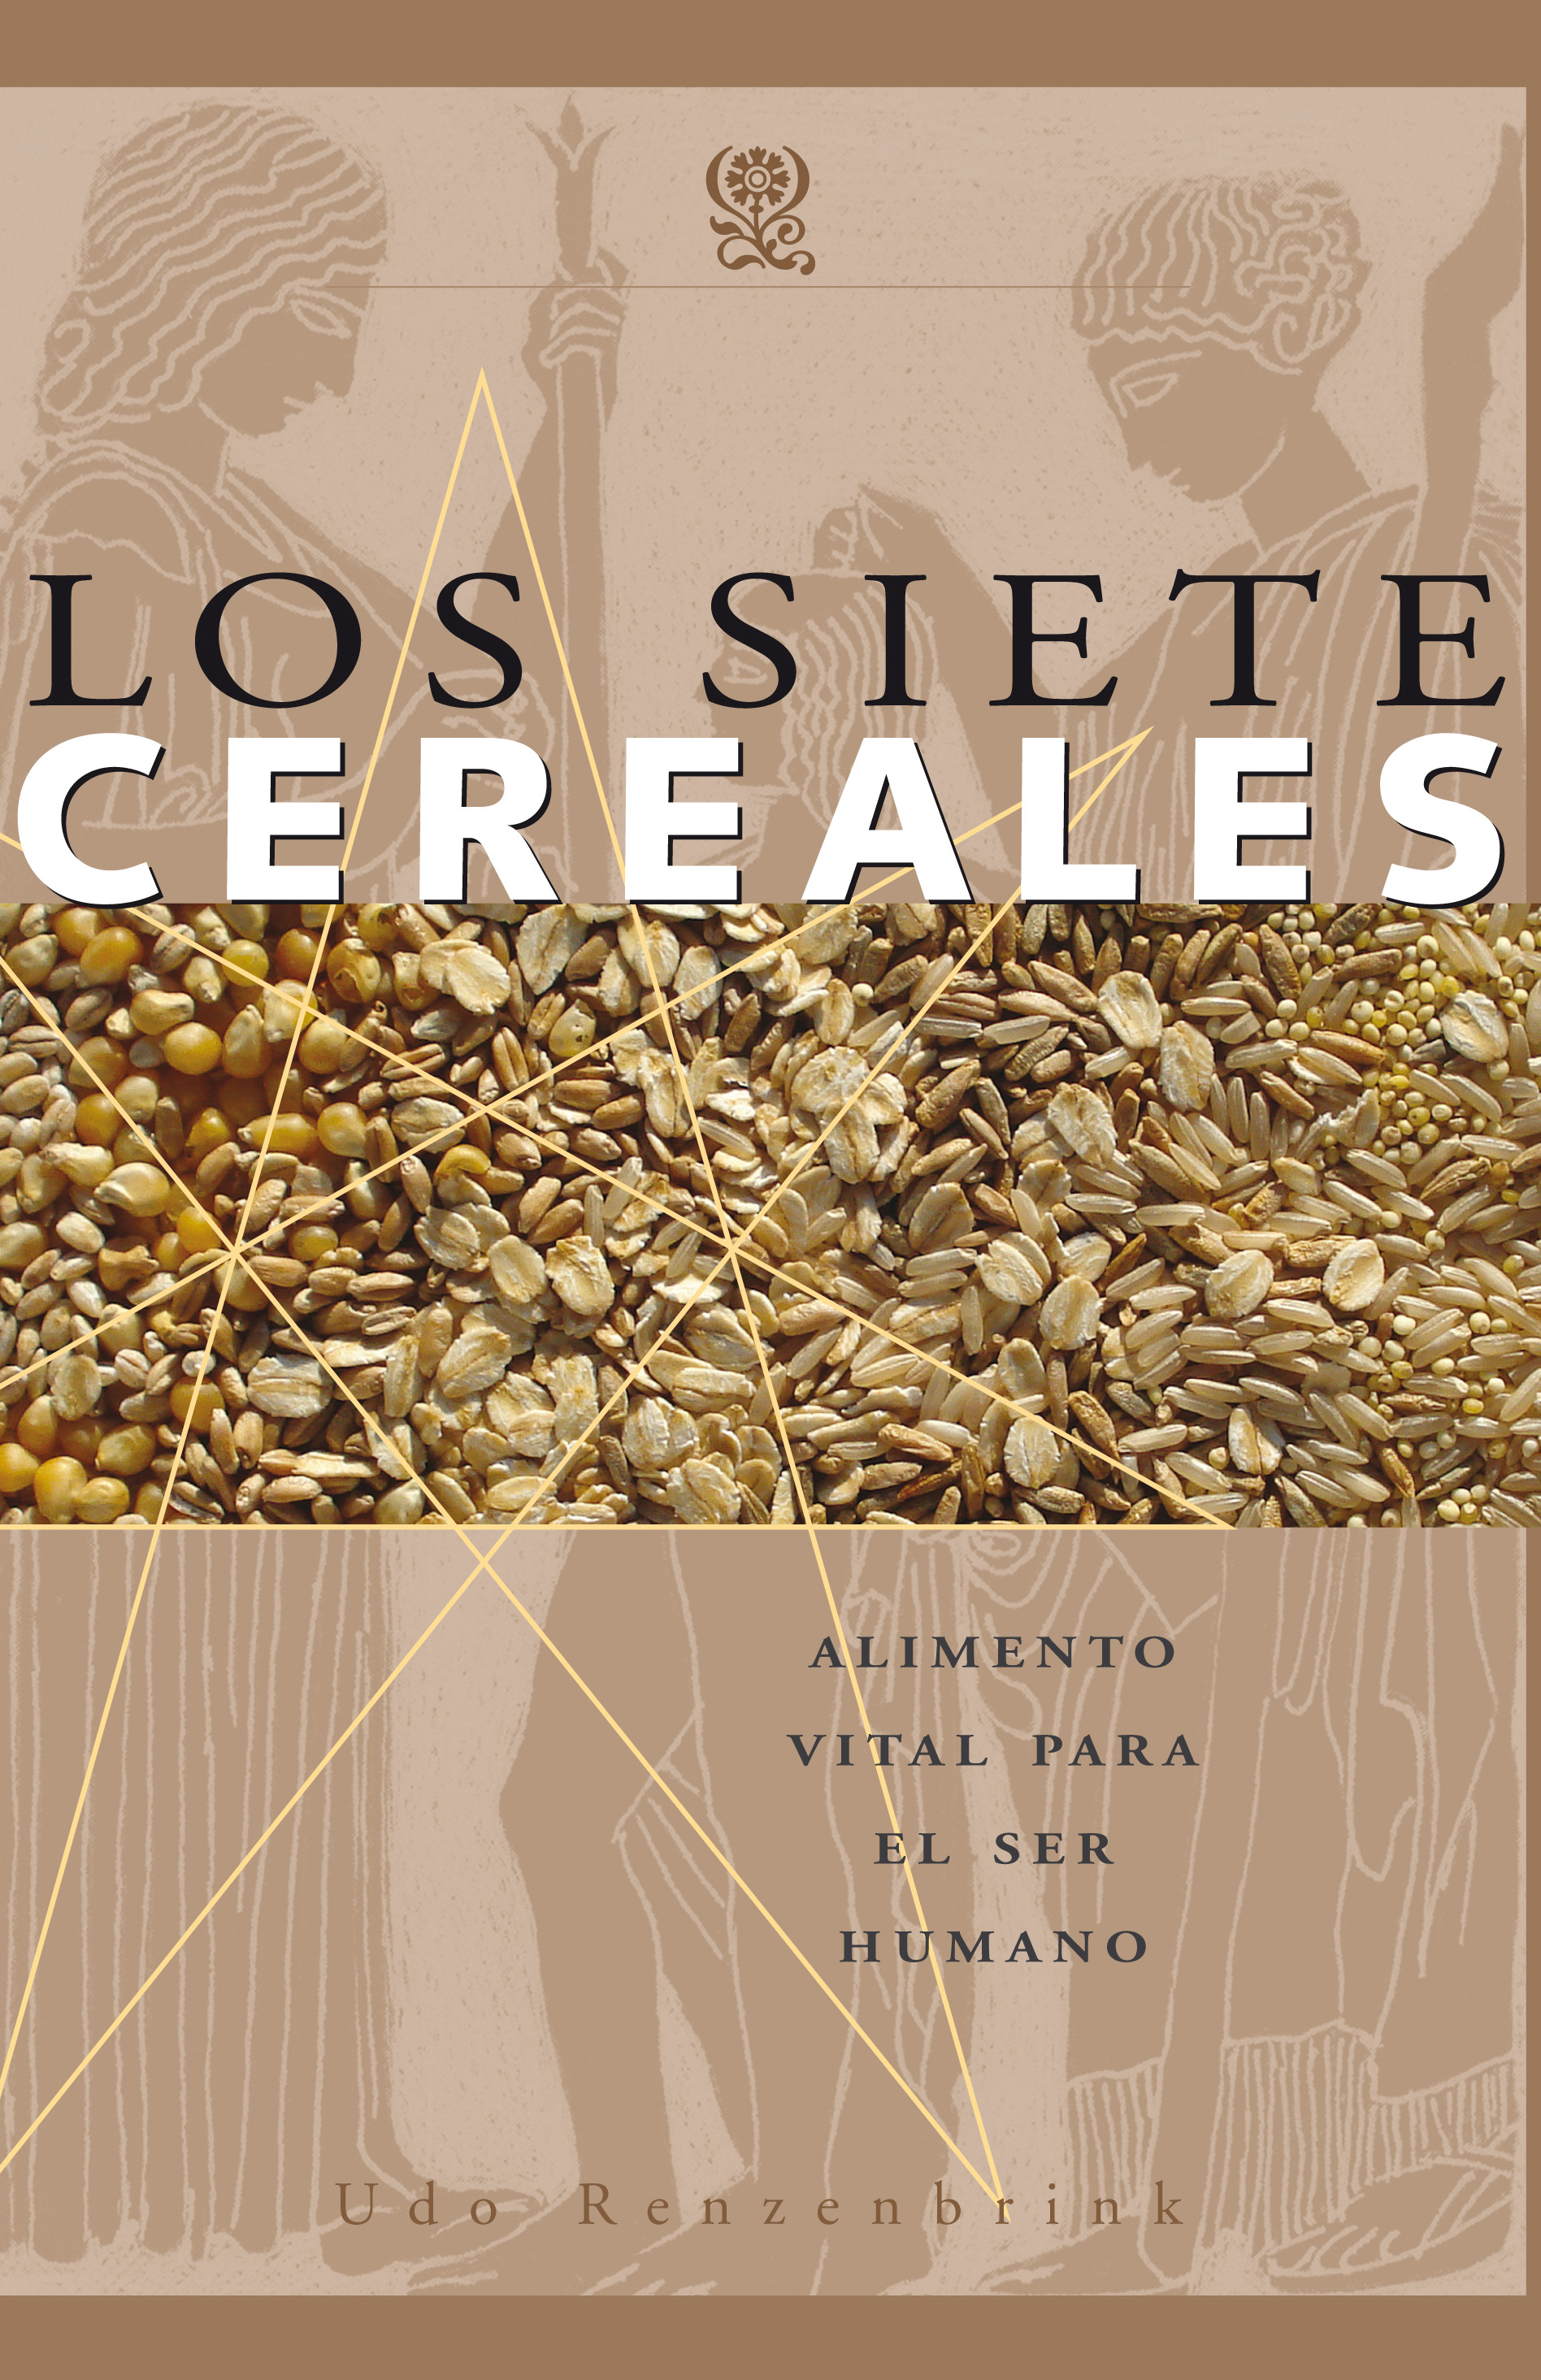 
            Los siete cereales